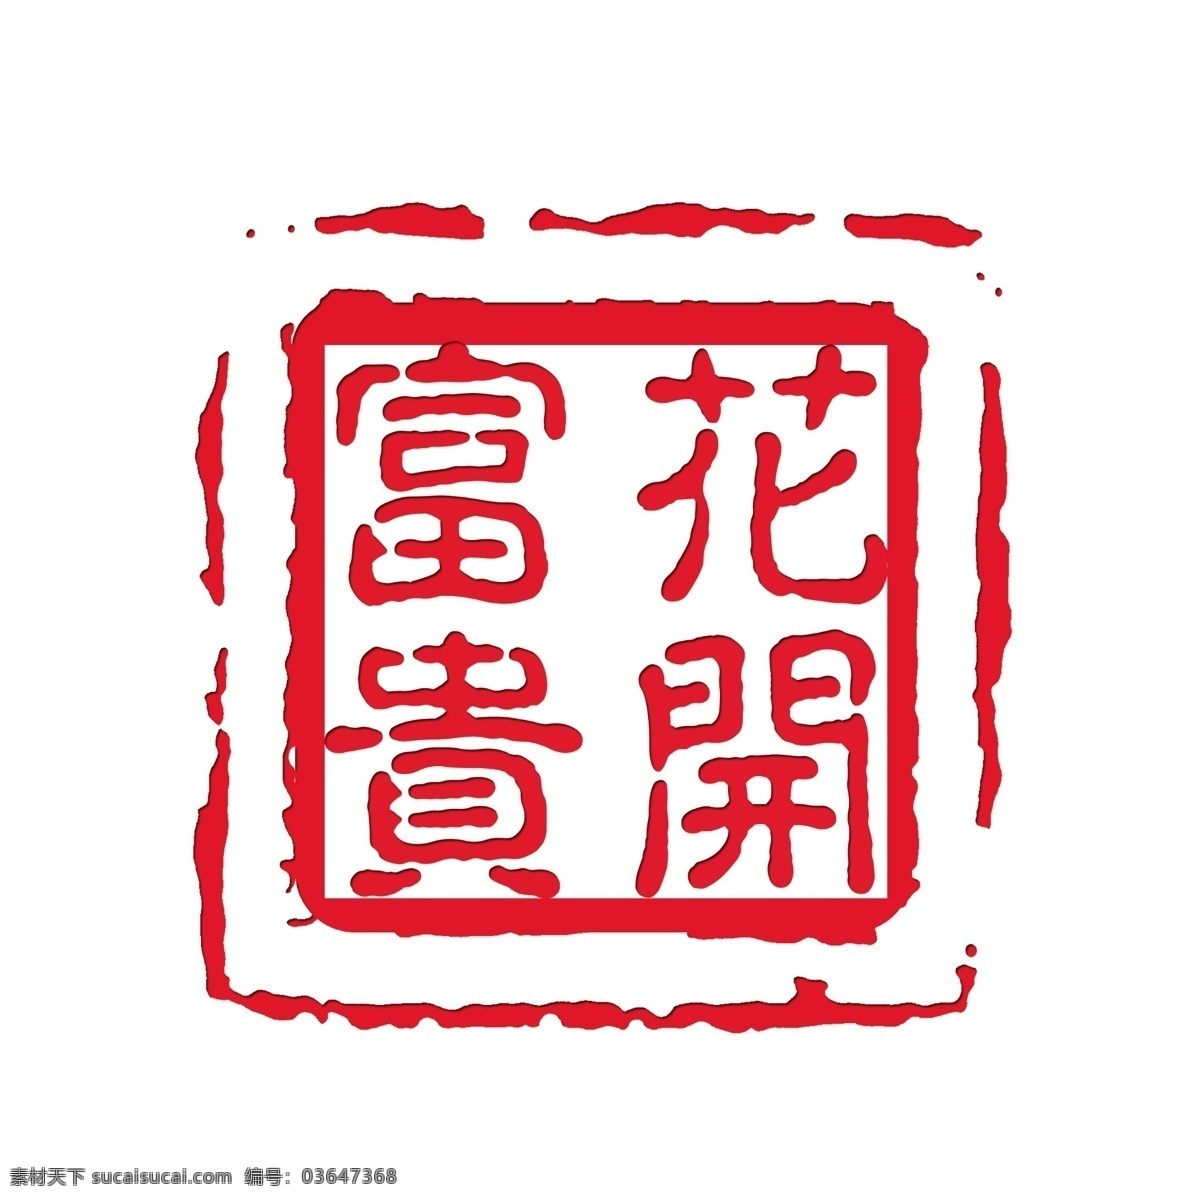 花开富贵 花开 富贵 印章 刻字 中国印 红色 广告设计模板 源文件 分层素材 矢量图 人气 火爆 分层